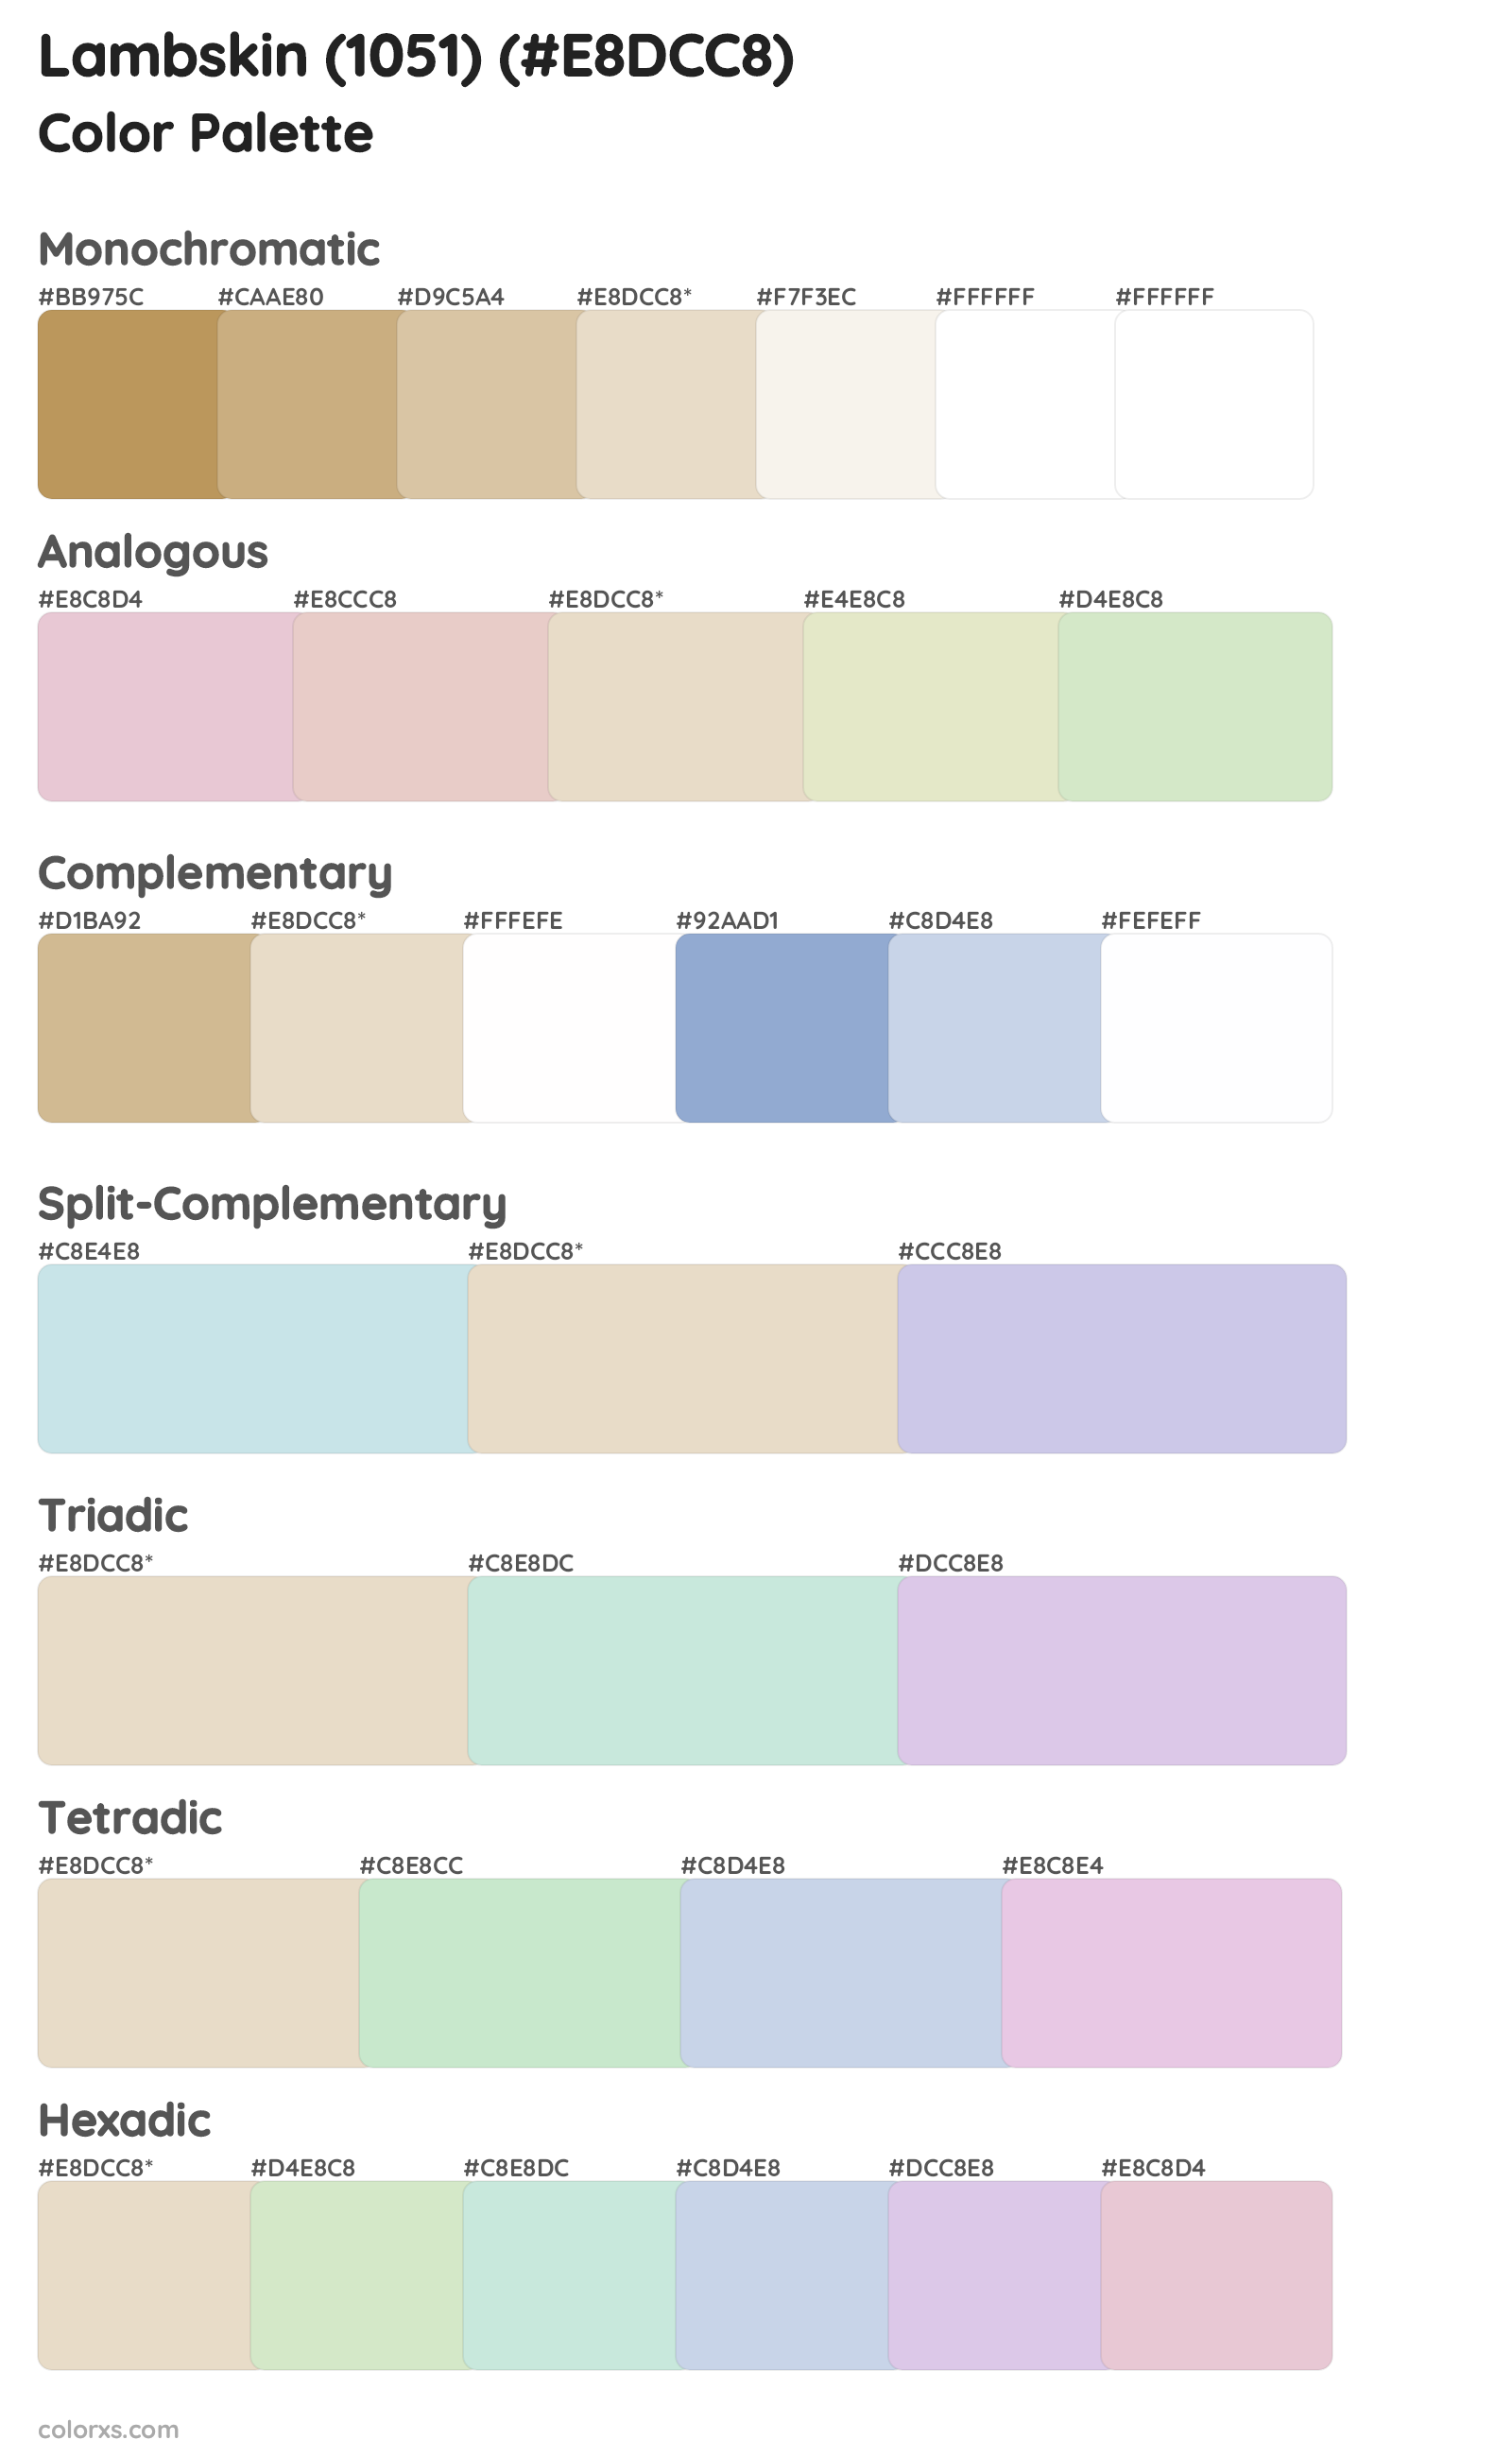 Lambskin (1051) Color Scheme Palettes